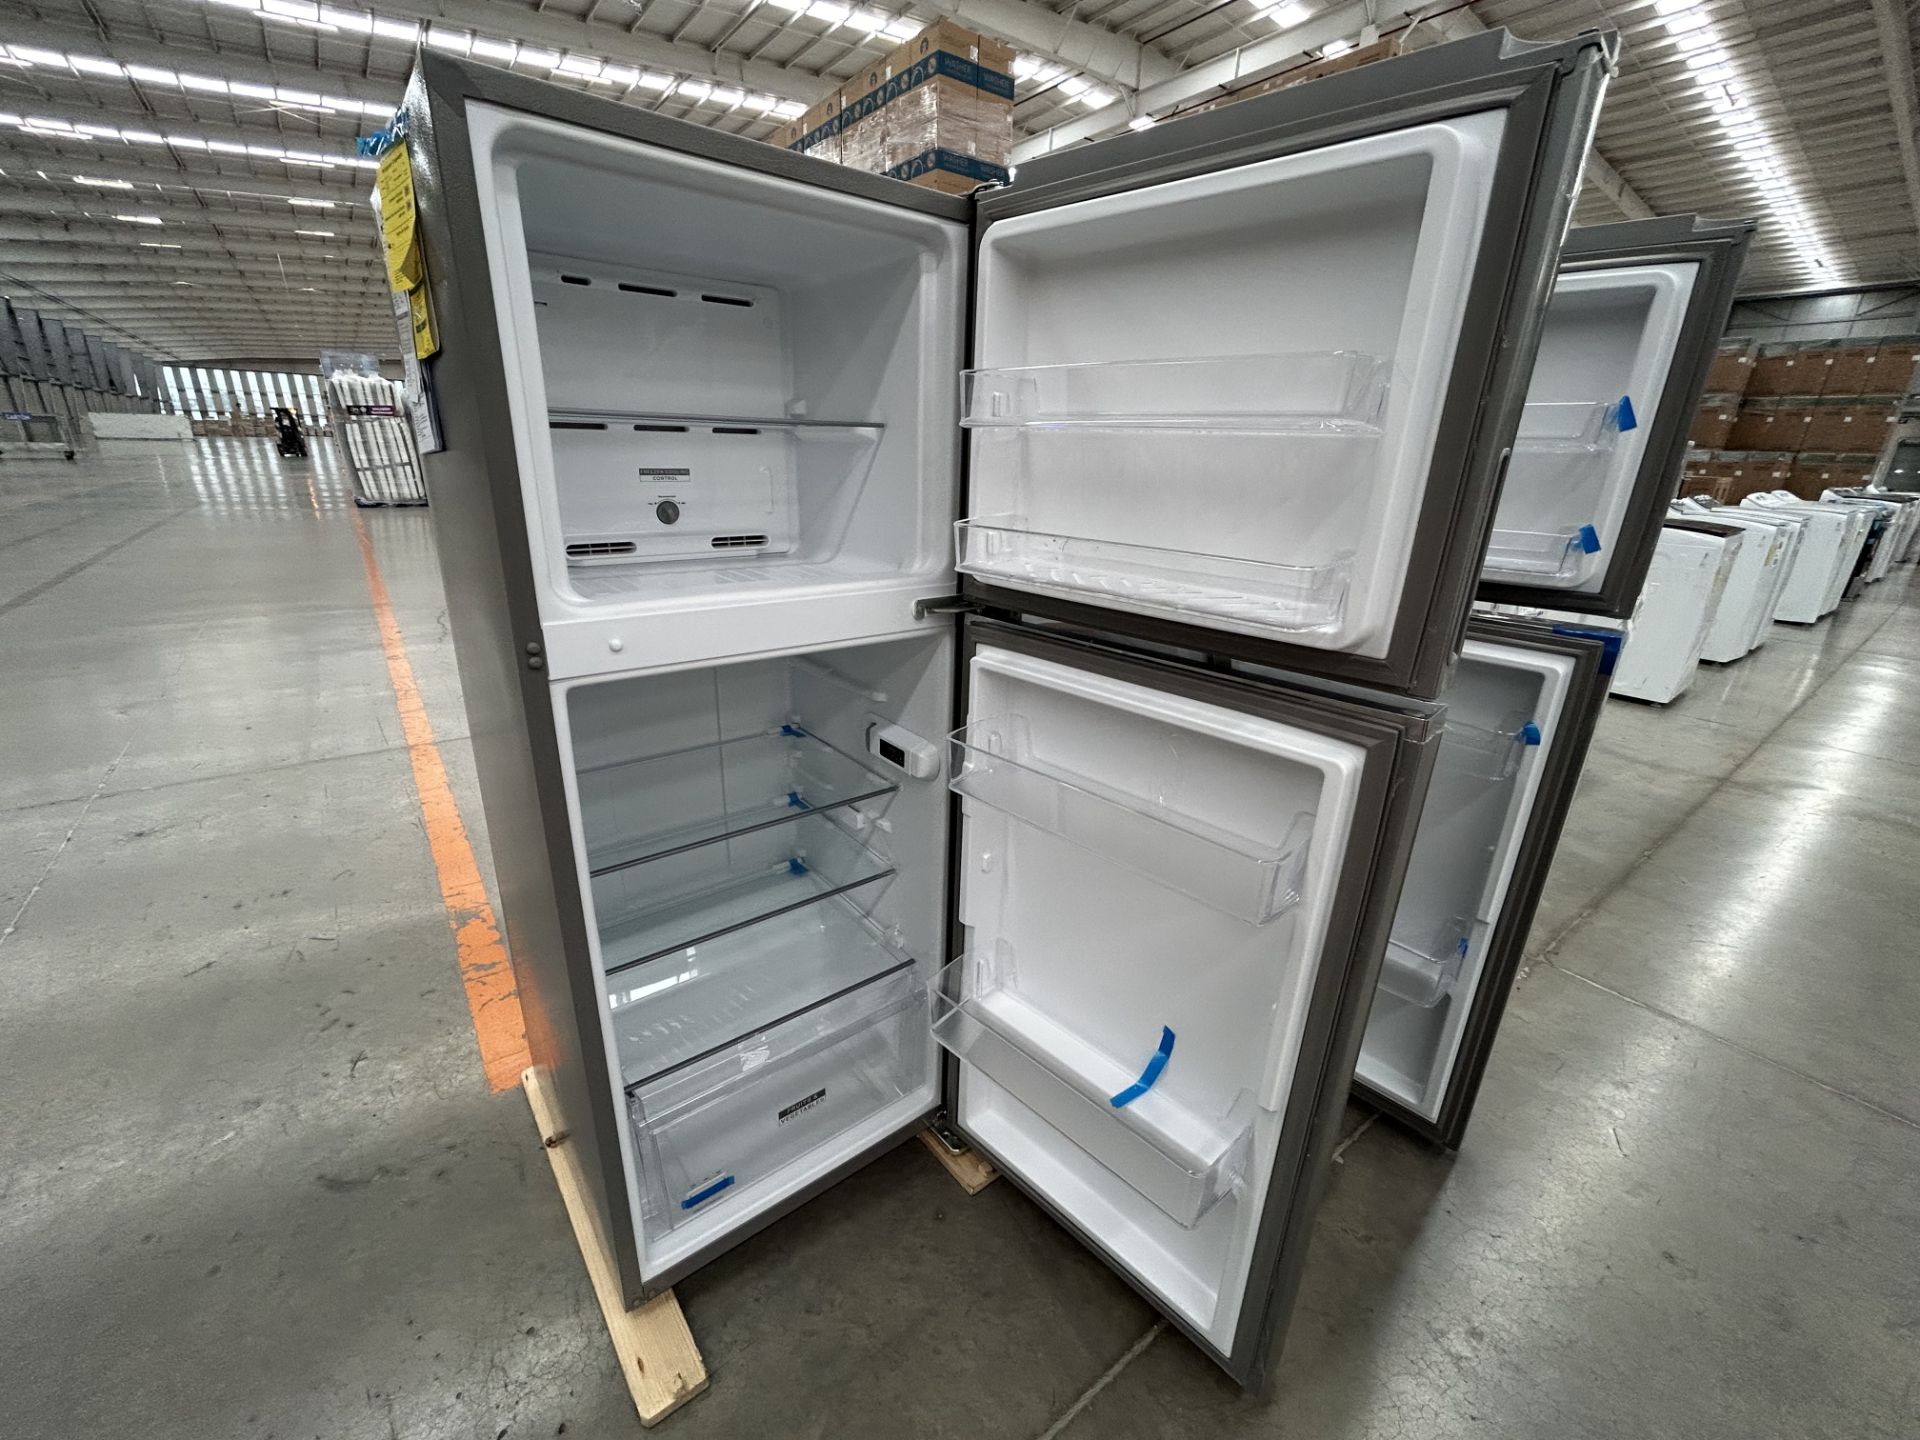 Lote de 2 refrigeradores contiene: 1 refrigerador Marca WHIRPOOL, Modelo WT1230K, Serie 90748, Colo - Image 5 of 6